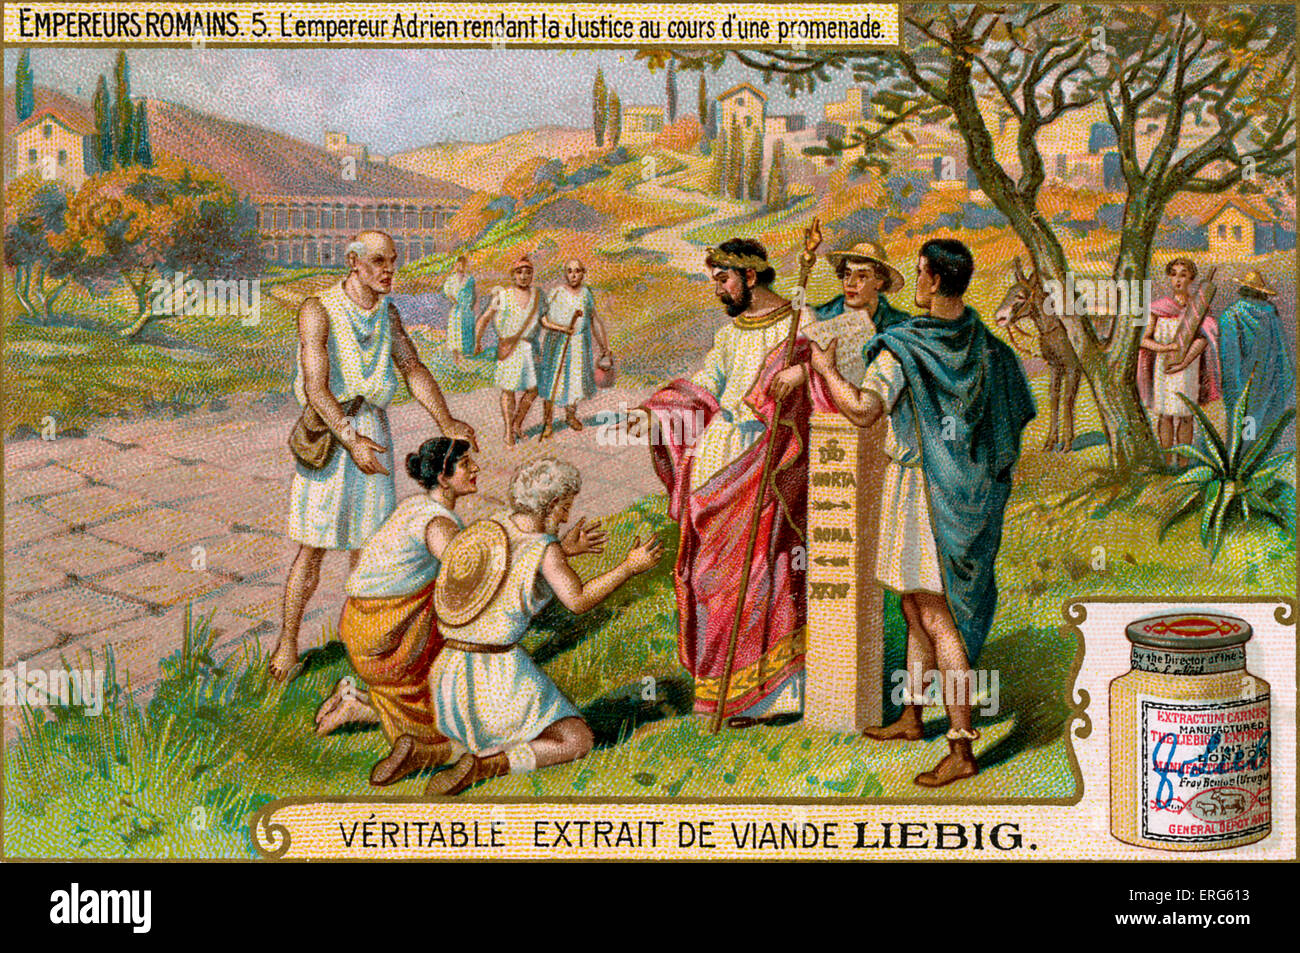 Roman Emperors - Liebig Fleisch Extrakt Sammelkartenspiel, 1907. Vignette von Hadrian. Bildunterschrift lautet: "L'empereur Adrien Stockfoto